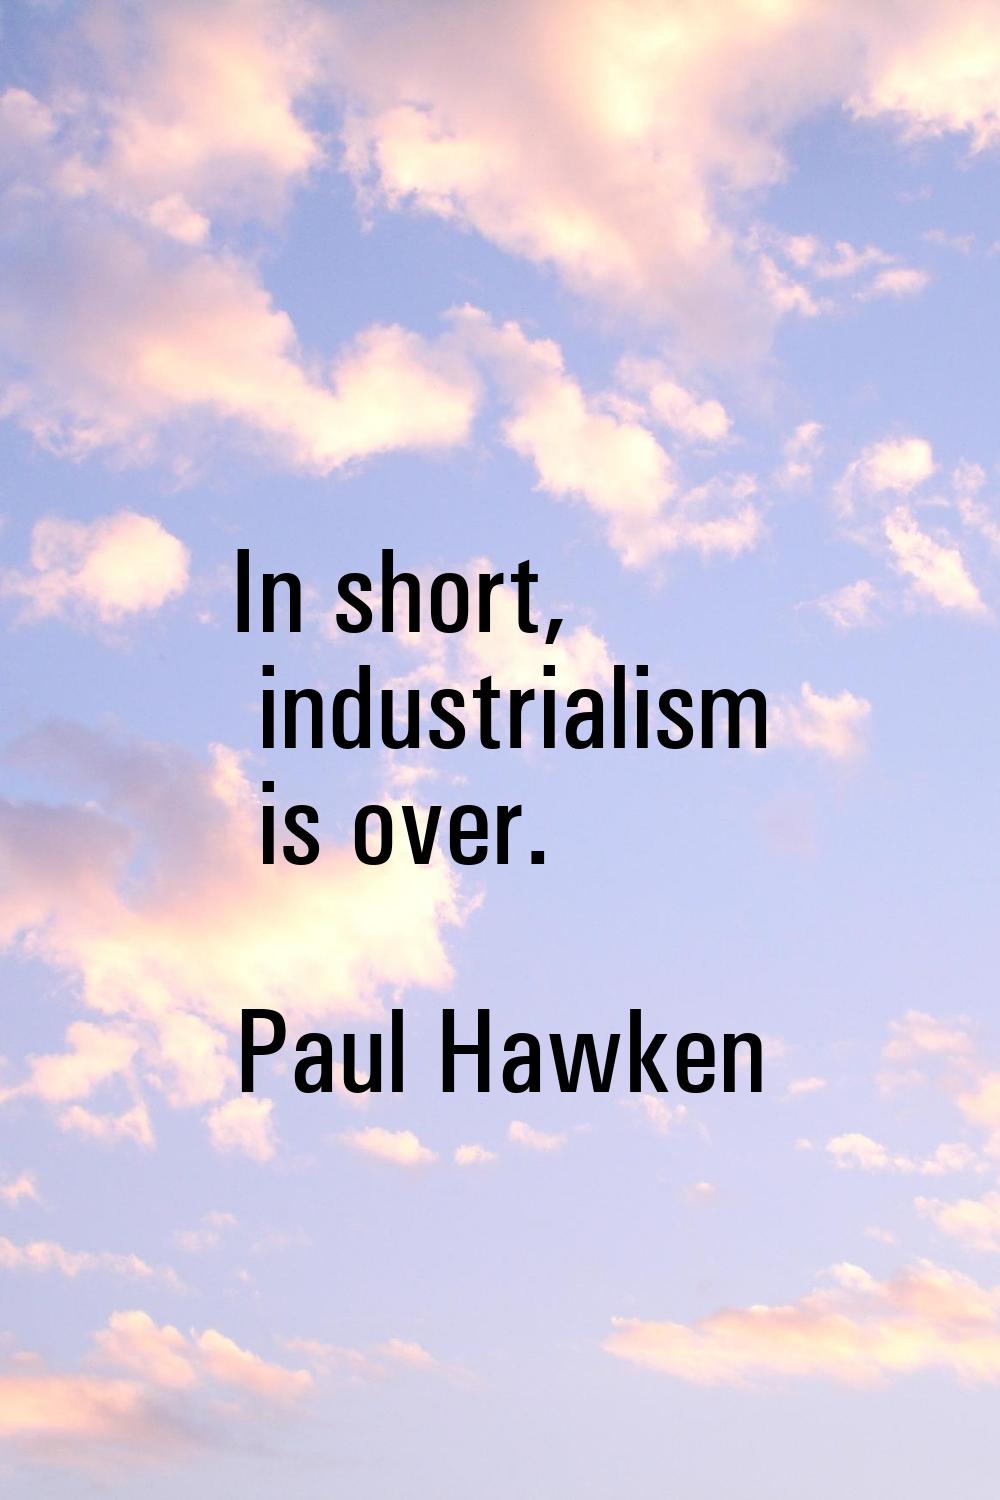 In short, industrialism is over.